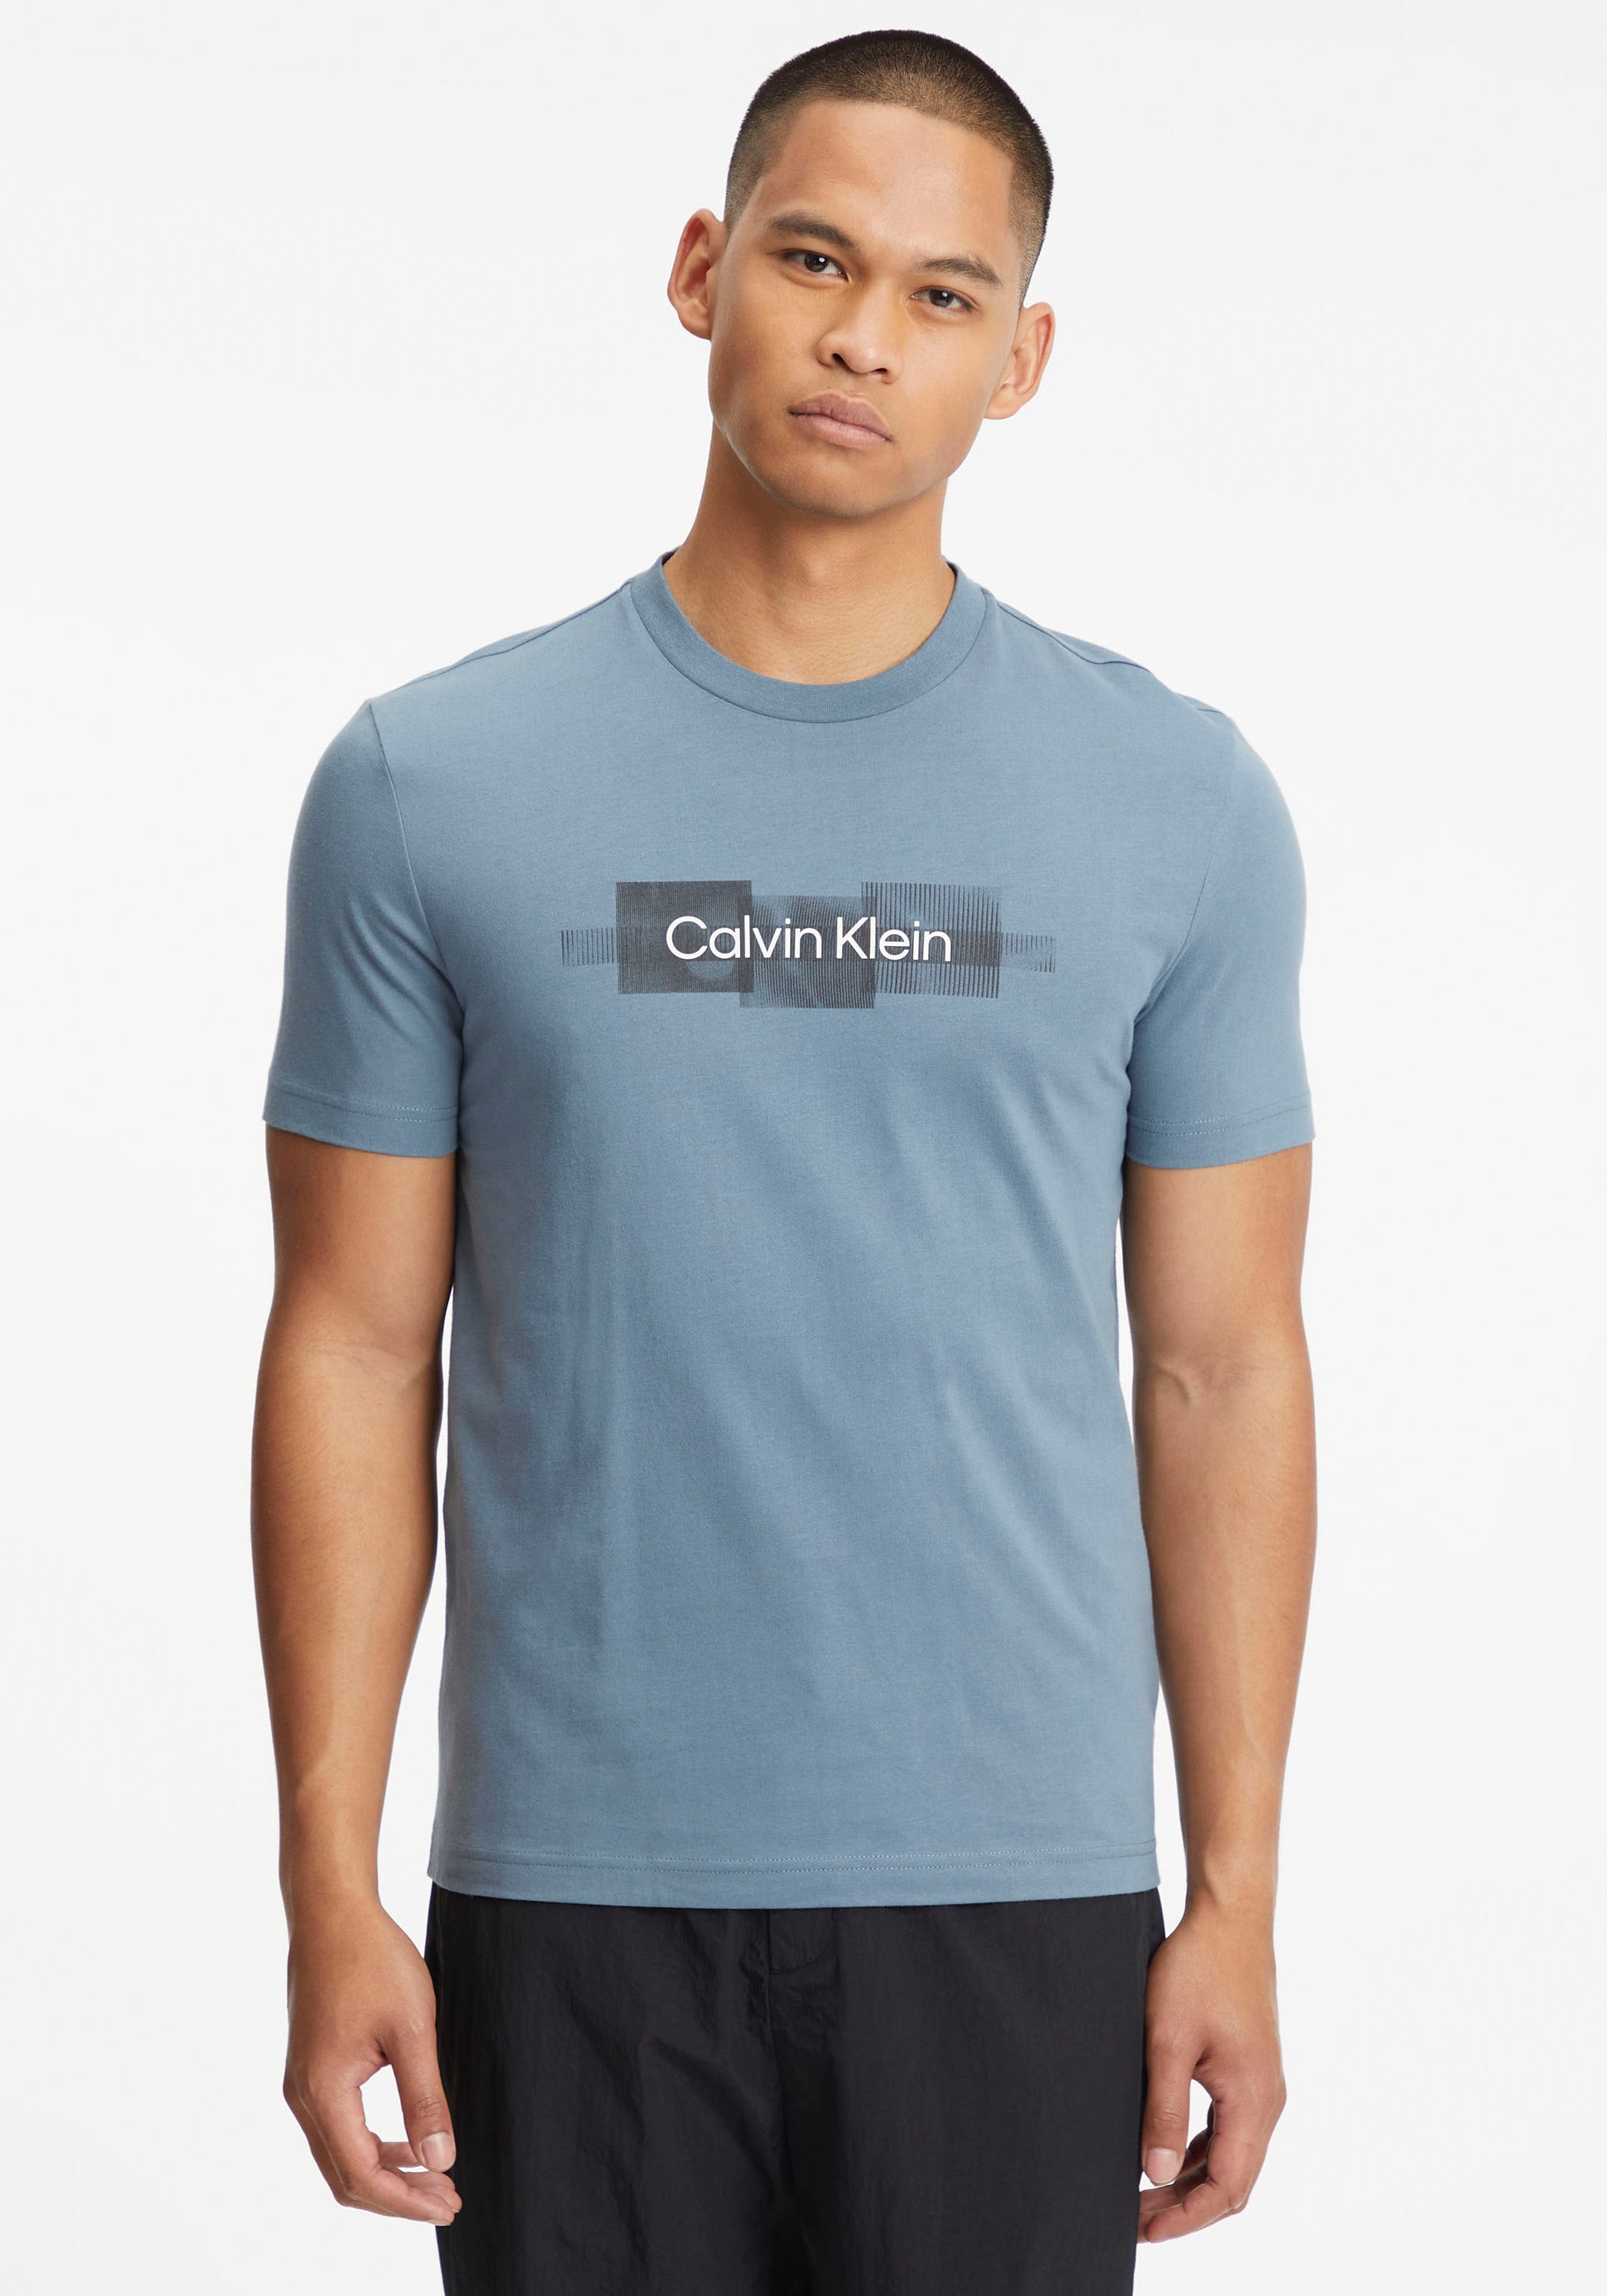 T-SHIRT«, LOGO kaufen aus bei STRIPED Calvin Klein »BOX Baumwolle T-Shirt OTTO online reiner